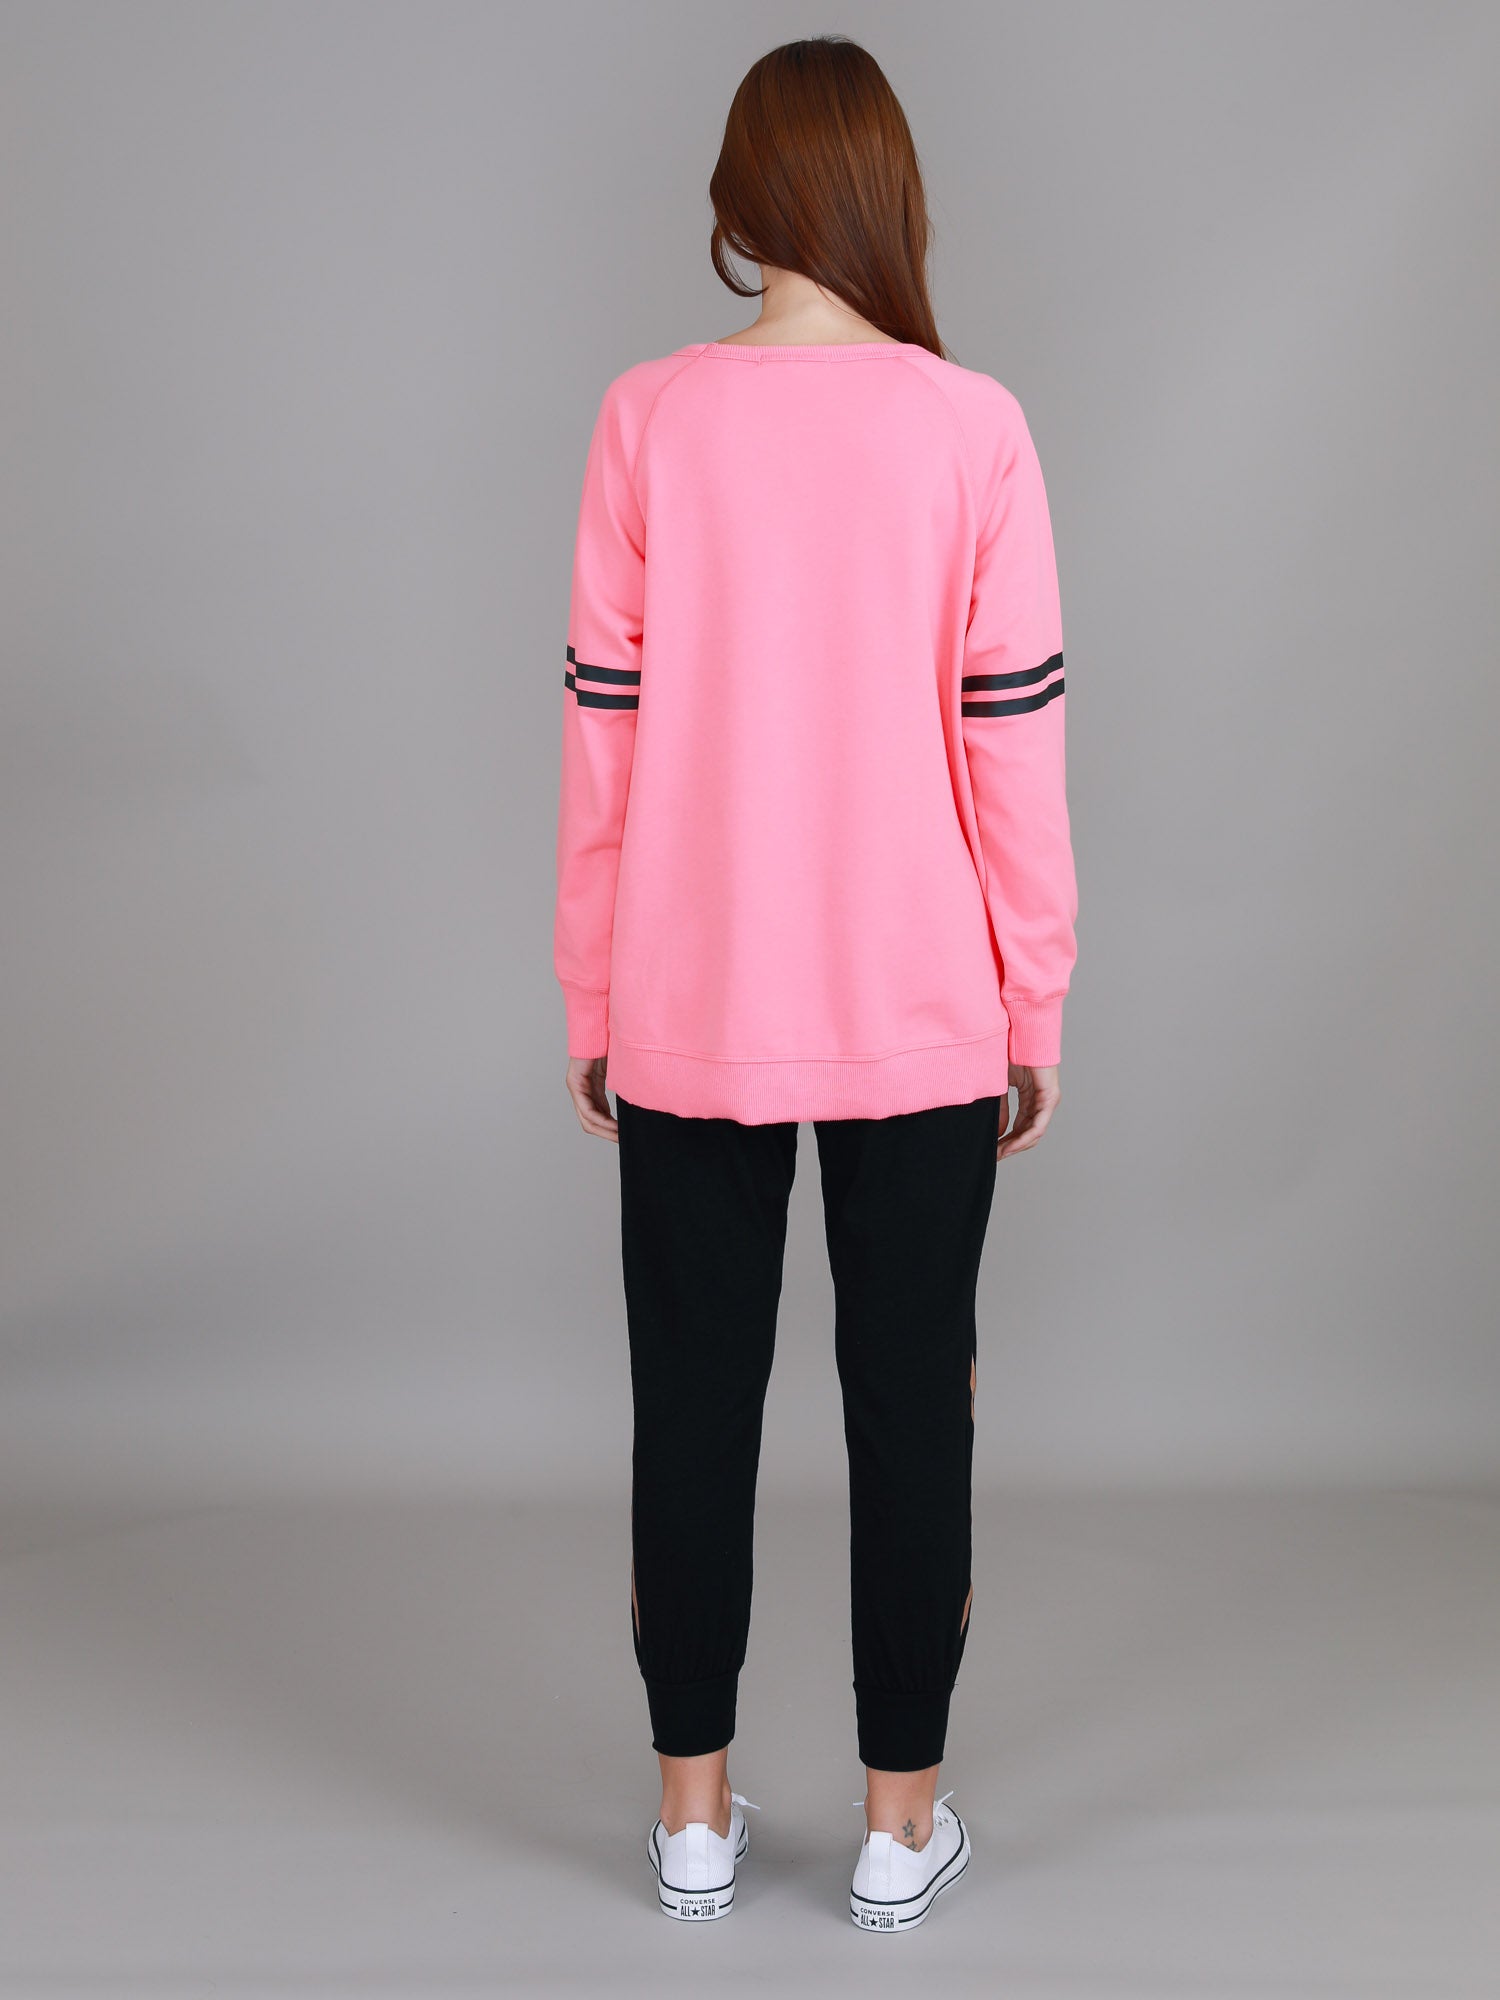 women's pink sweatshirt #color_bubblegum